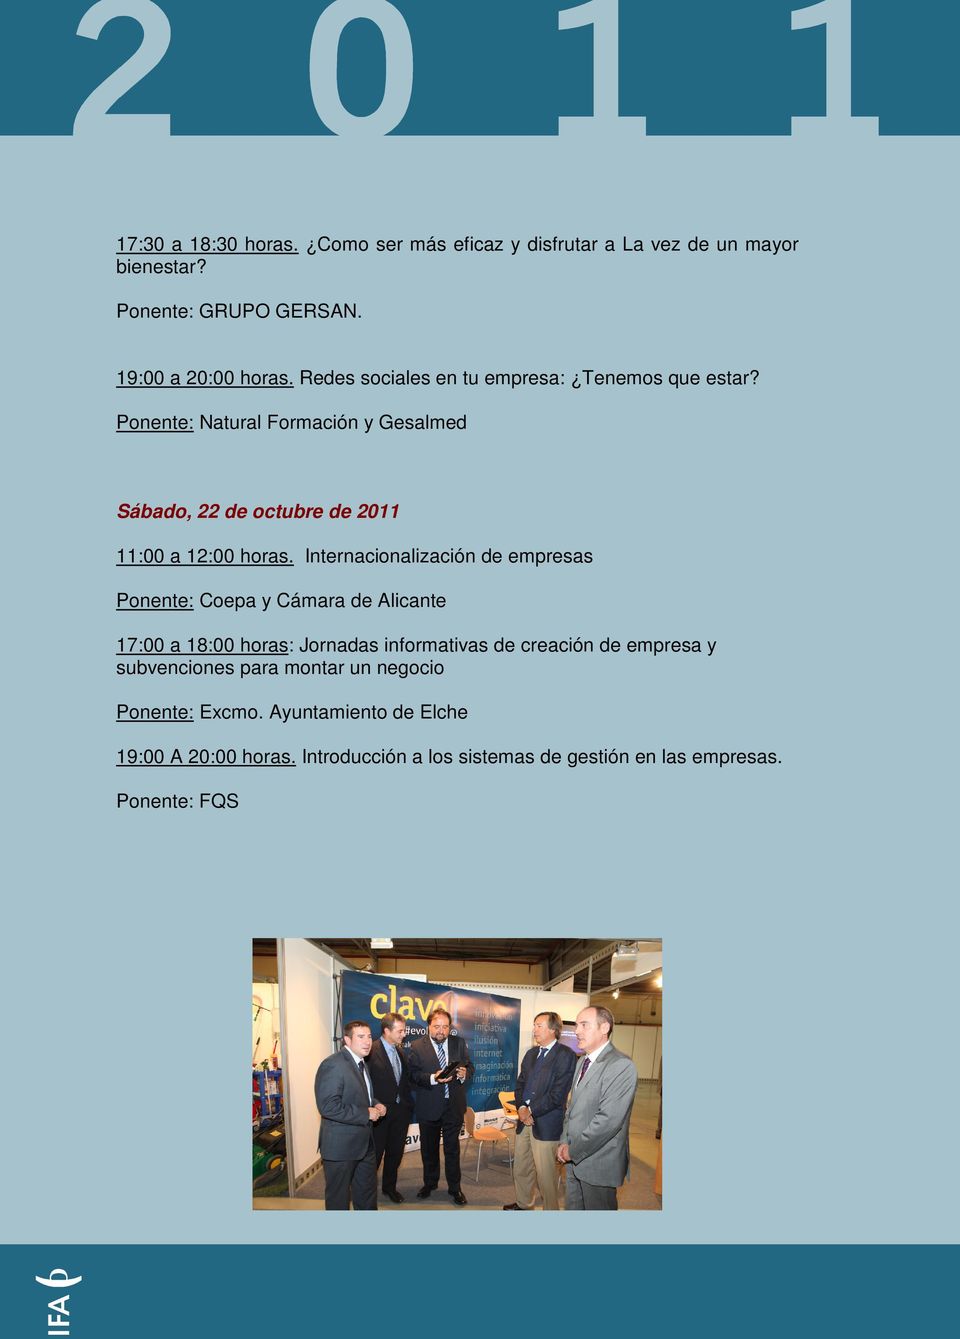 Internacionalización de empresas Ponente: Coepa y Cámara de Alicante 17:00 a 18:00 horas: Jornadas informativas de creación de empresa y